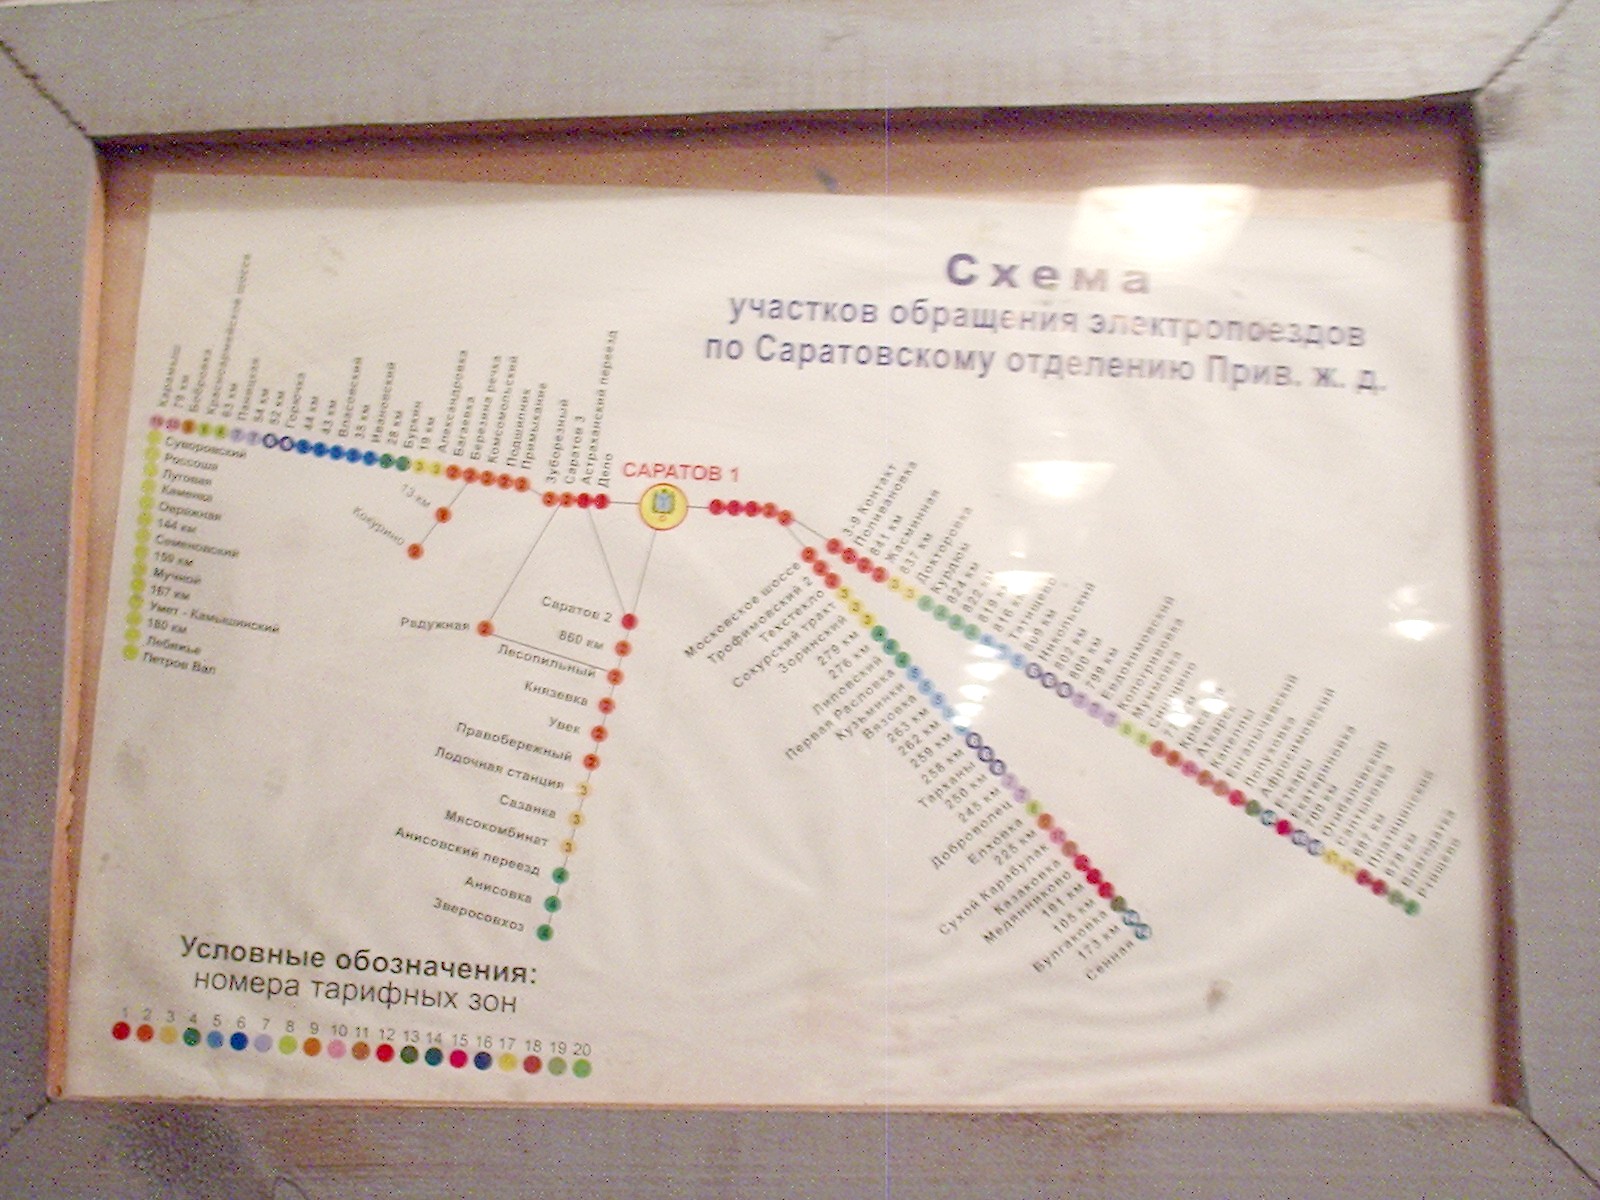 Отдельные фотографии объектов железнодорожного транспорта на территории Саратовской области —   «Cхема участков обращения электропоездов»